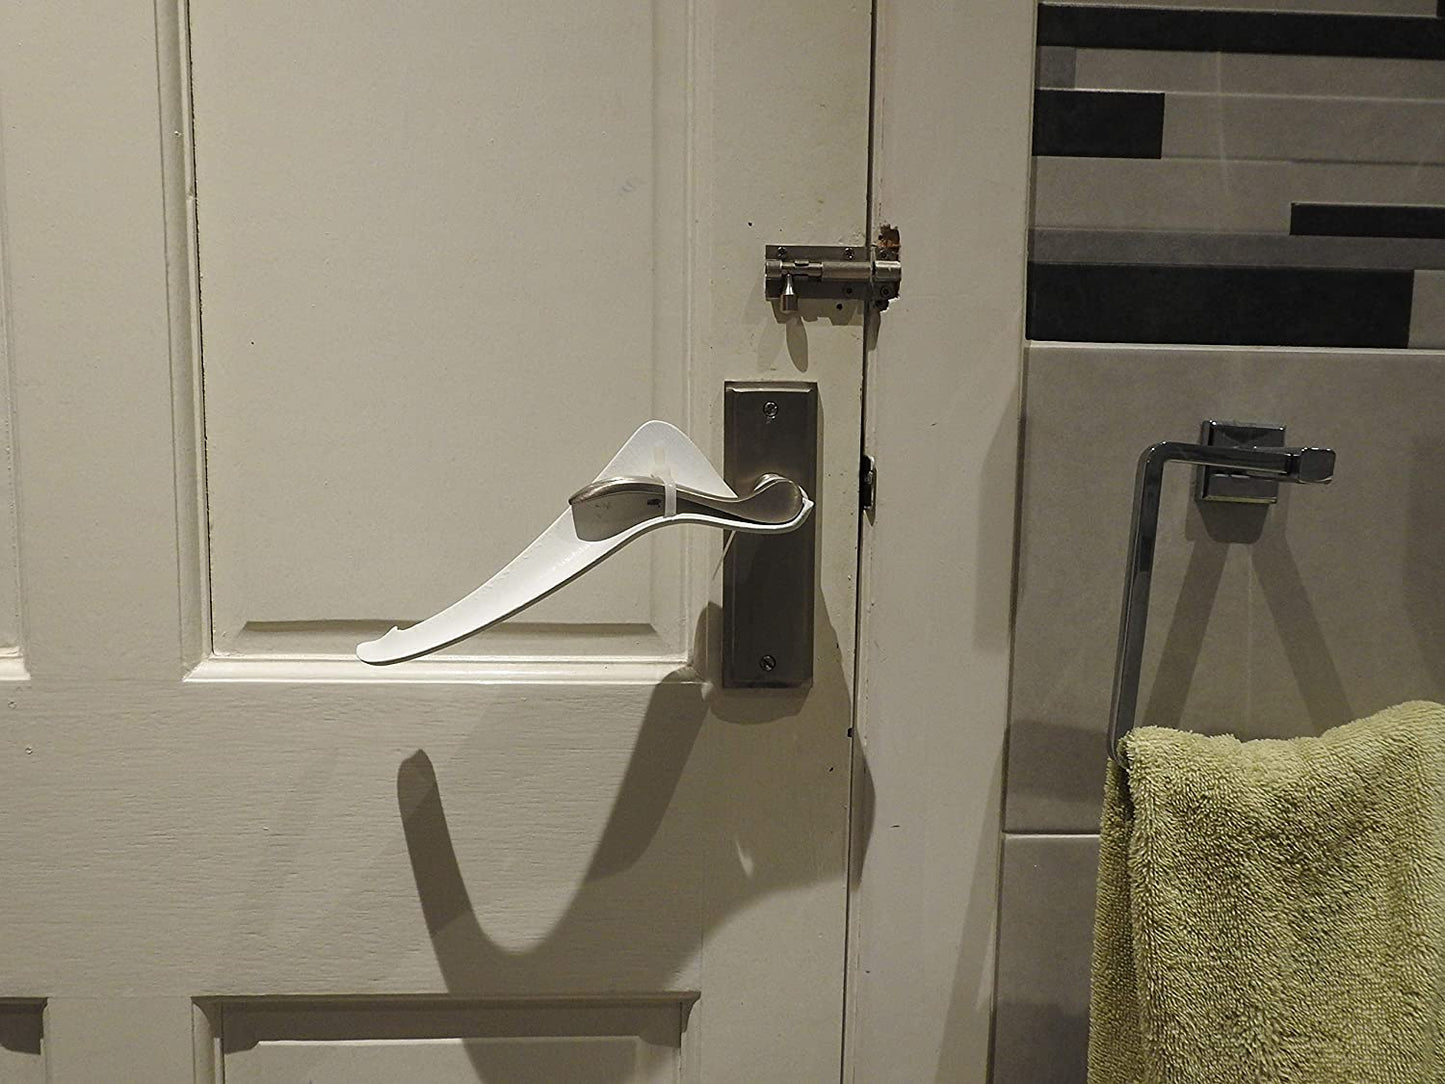 Tru Grip - door handle extension kit